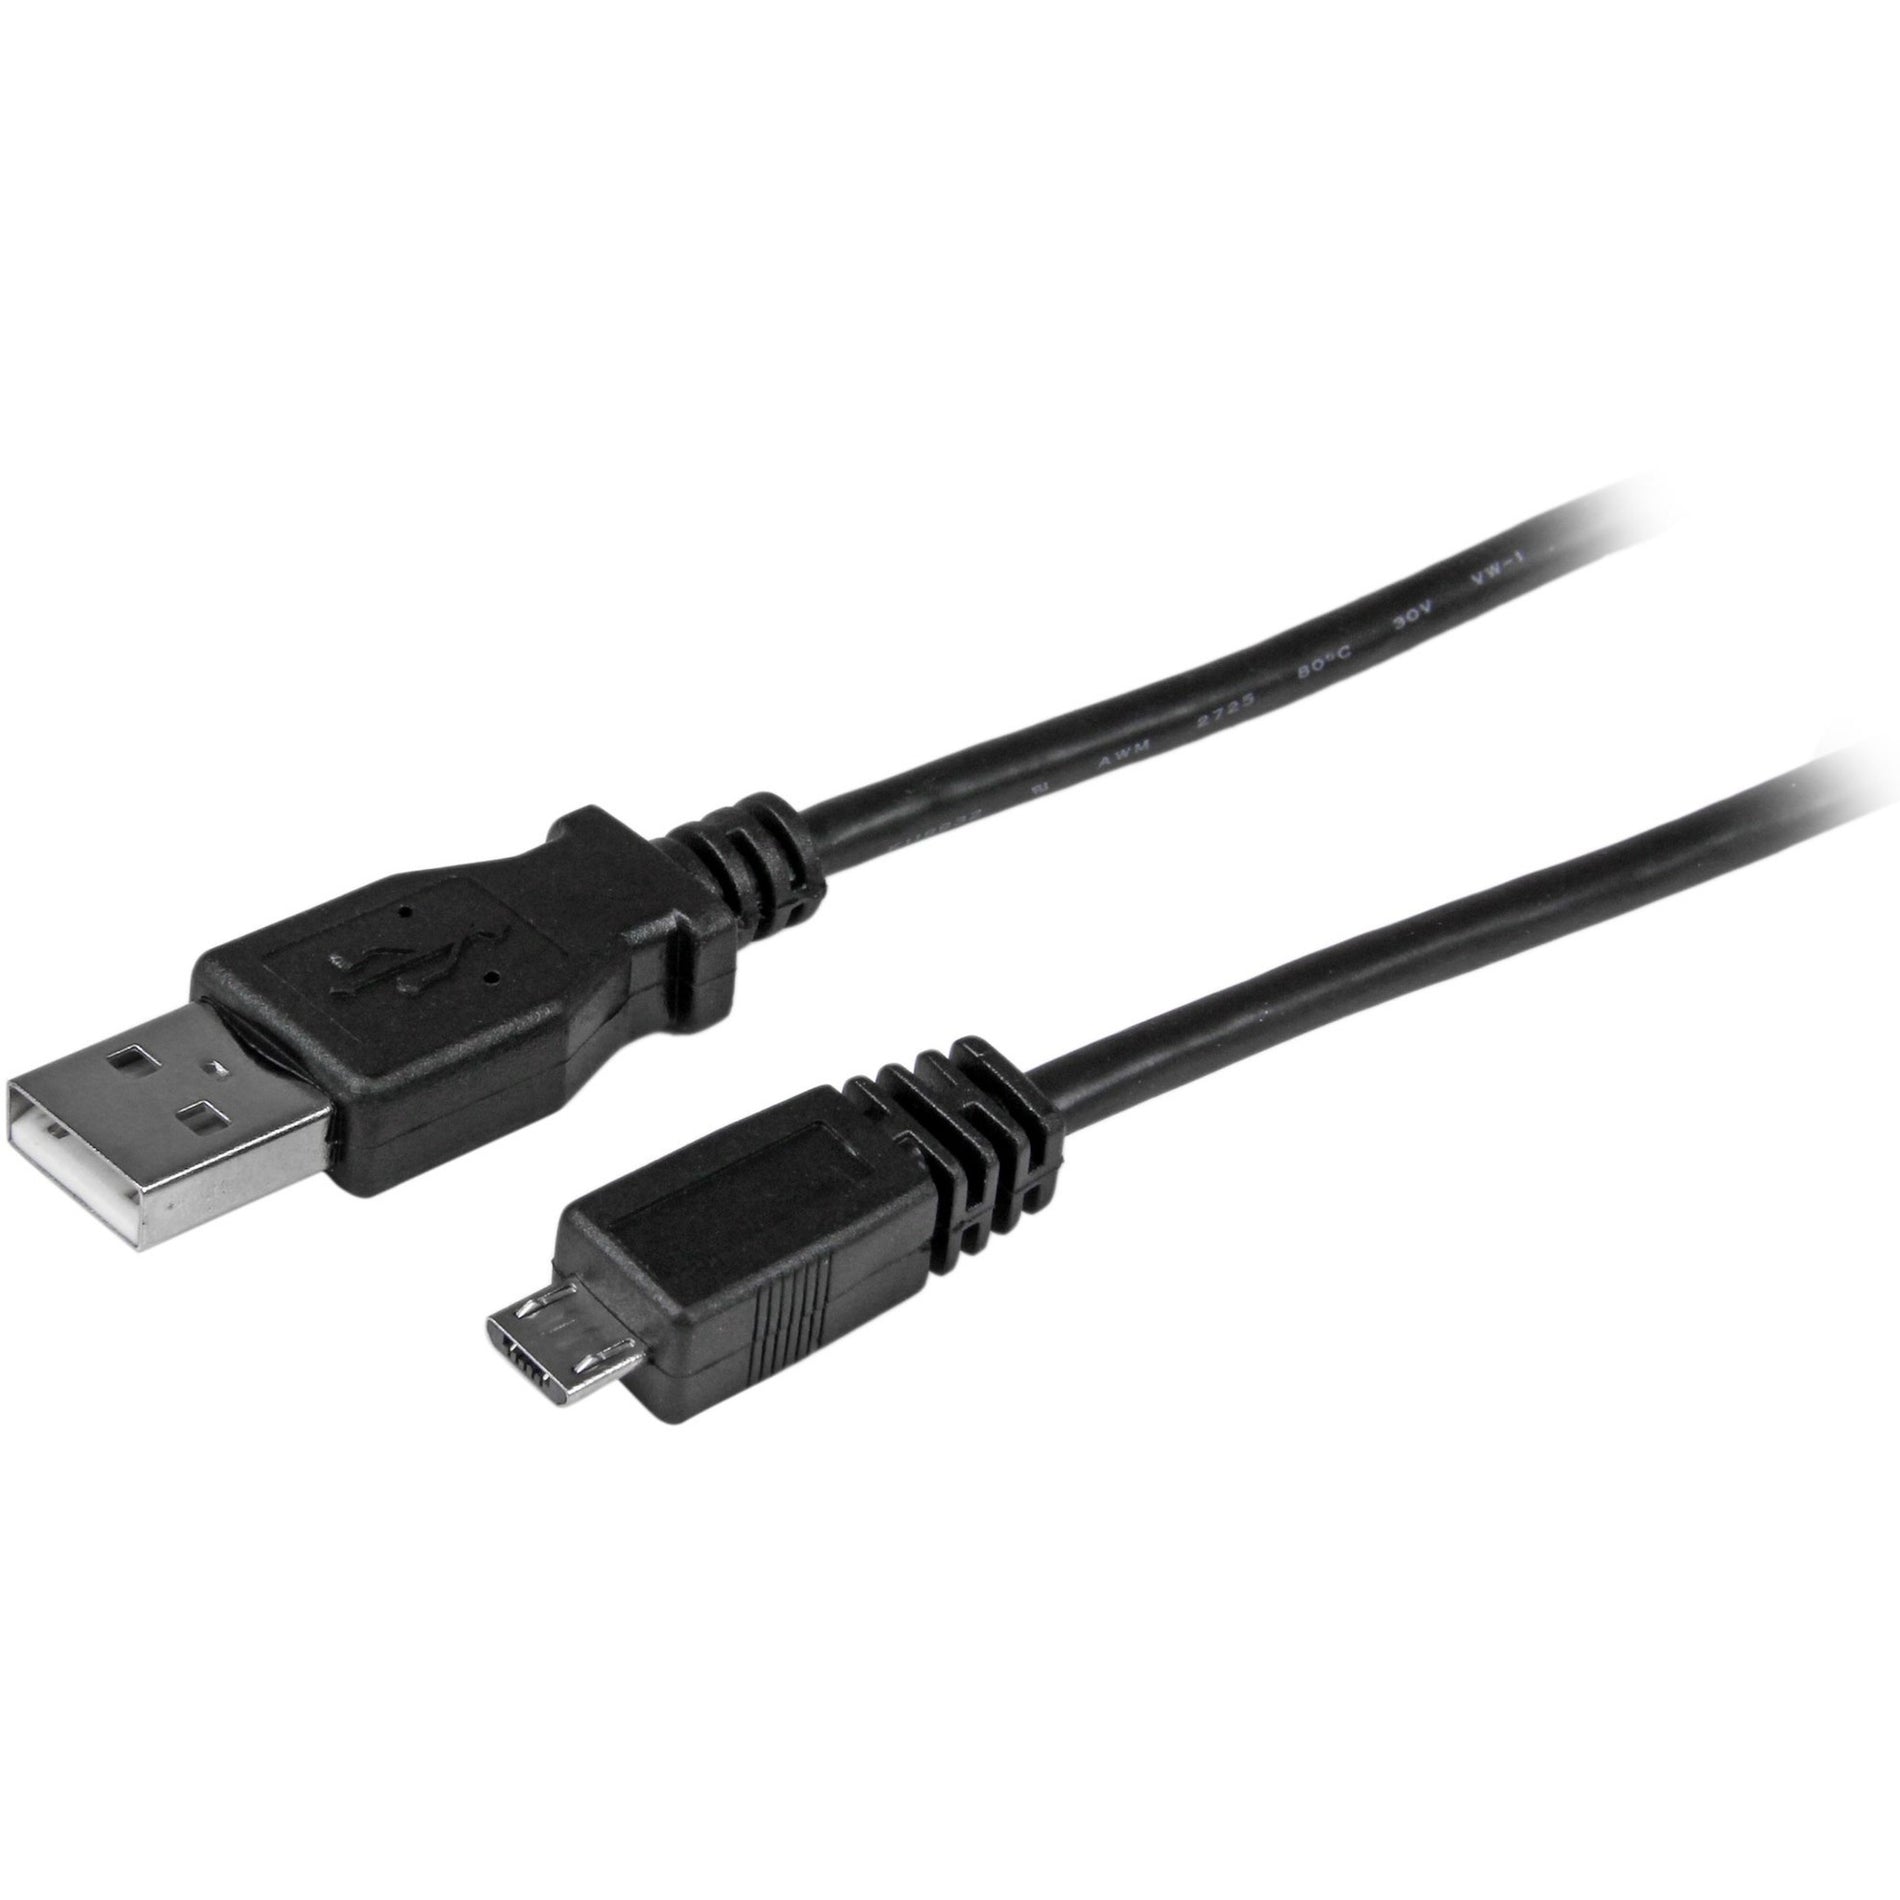 星特科技 UUSBHAUB1 1英尺微型USB数据线 - A型到左角微型B， 右角连接器， 充电， 480兆位/秒数据传输速率 星特科技 (StarTech.com)